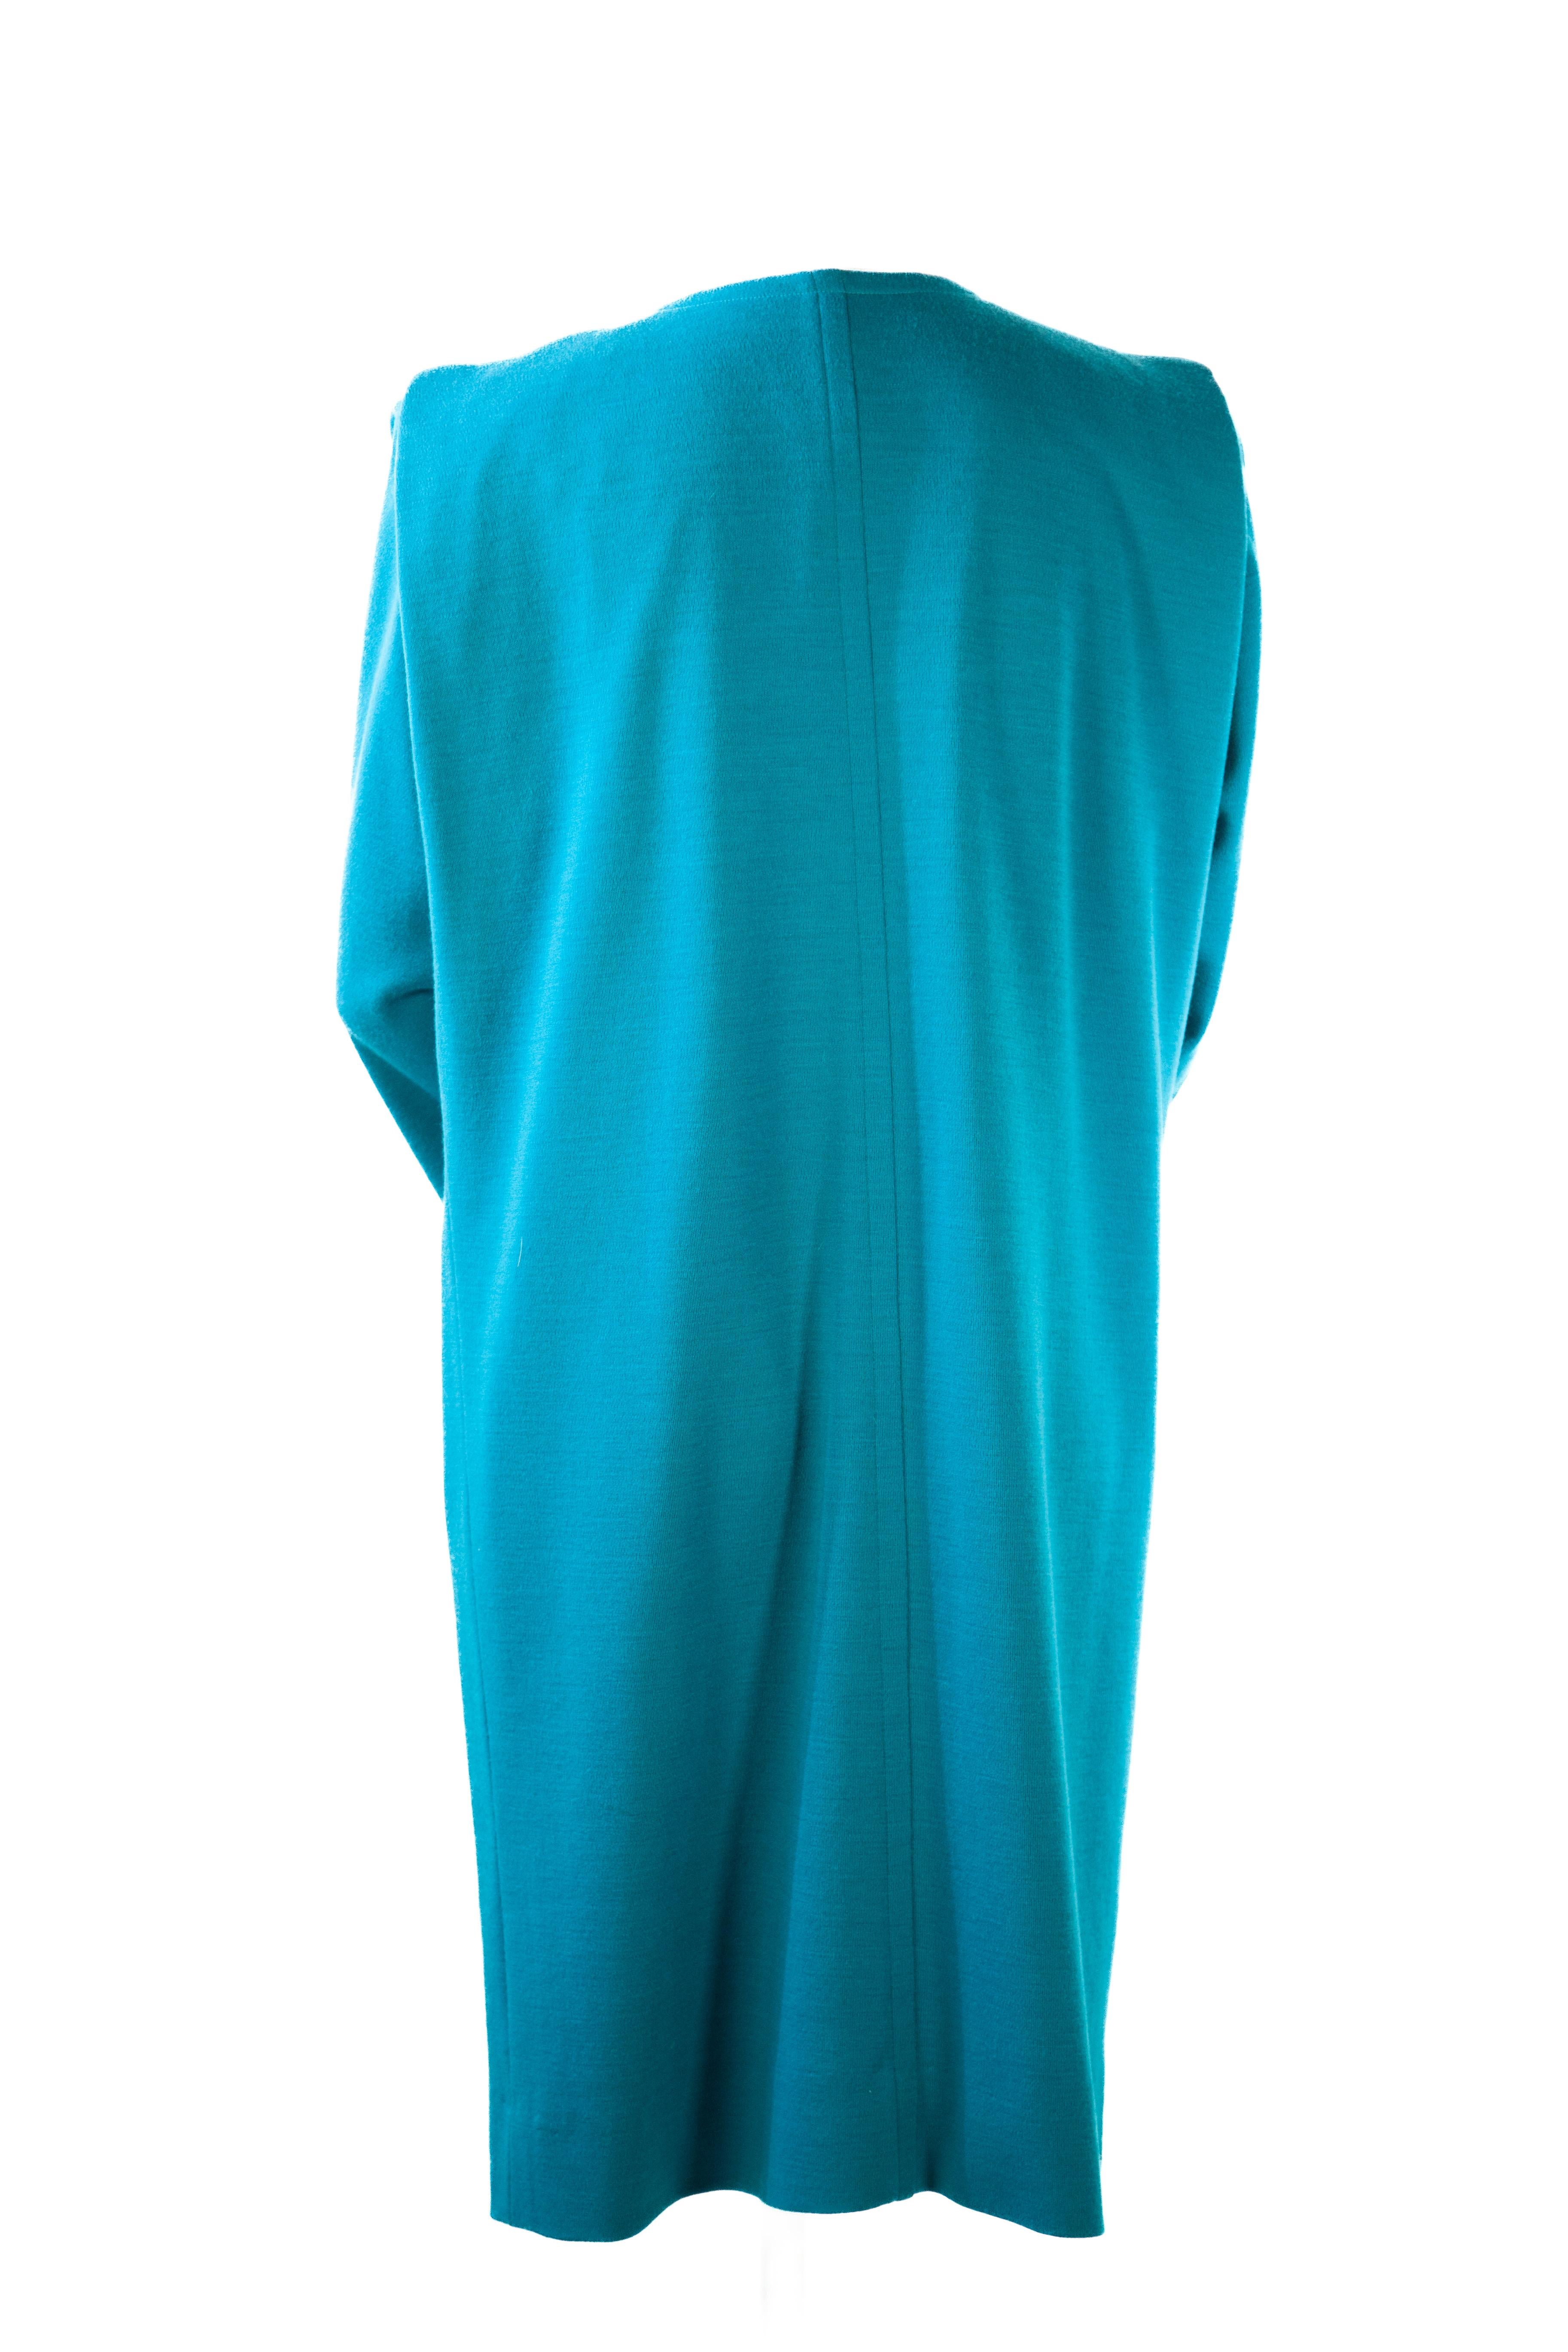 Women's or Men's Yves Saint Laurent Rive Gauche Turquoise Smock Dress 